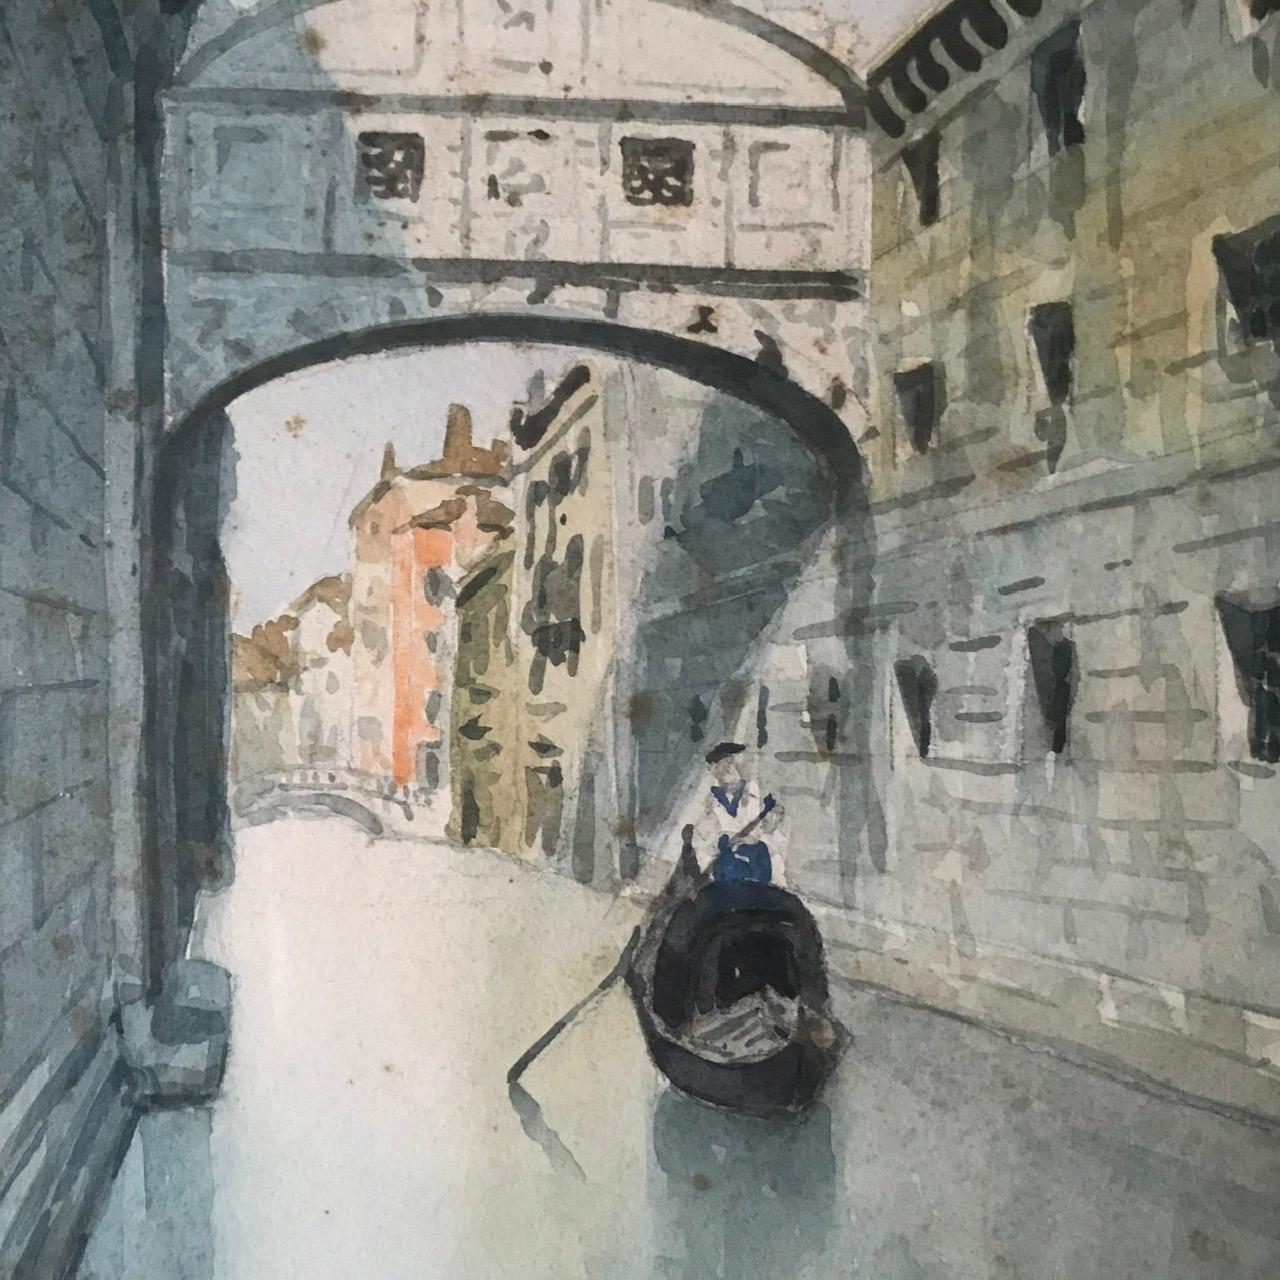 Jolie petite aquarelle représentant la ville de Venise en Italie. Nous voyons un gondolier sur le canal Rio de la Canonica situé entre le Palais Ducal et la prison. Ces deux bâtiments sont reliés par le célèbre pont des Soupirs. Appelé ainsi car